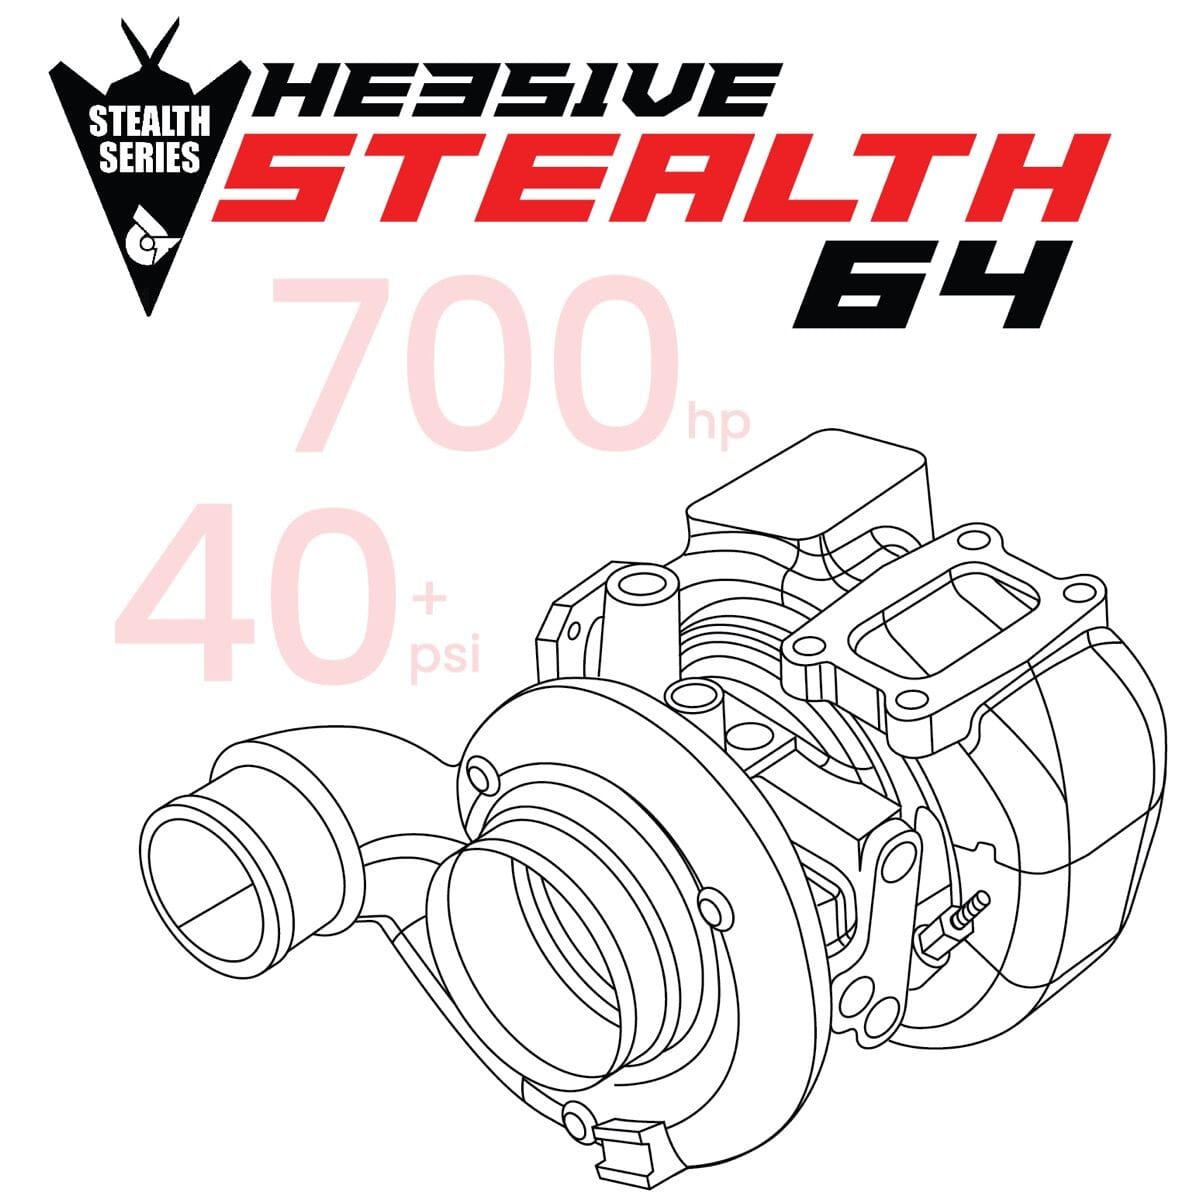 HE351VE Stealth Mach 1 64 Turbo (2010-2012 6.7L Cummins)